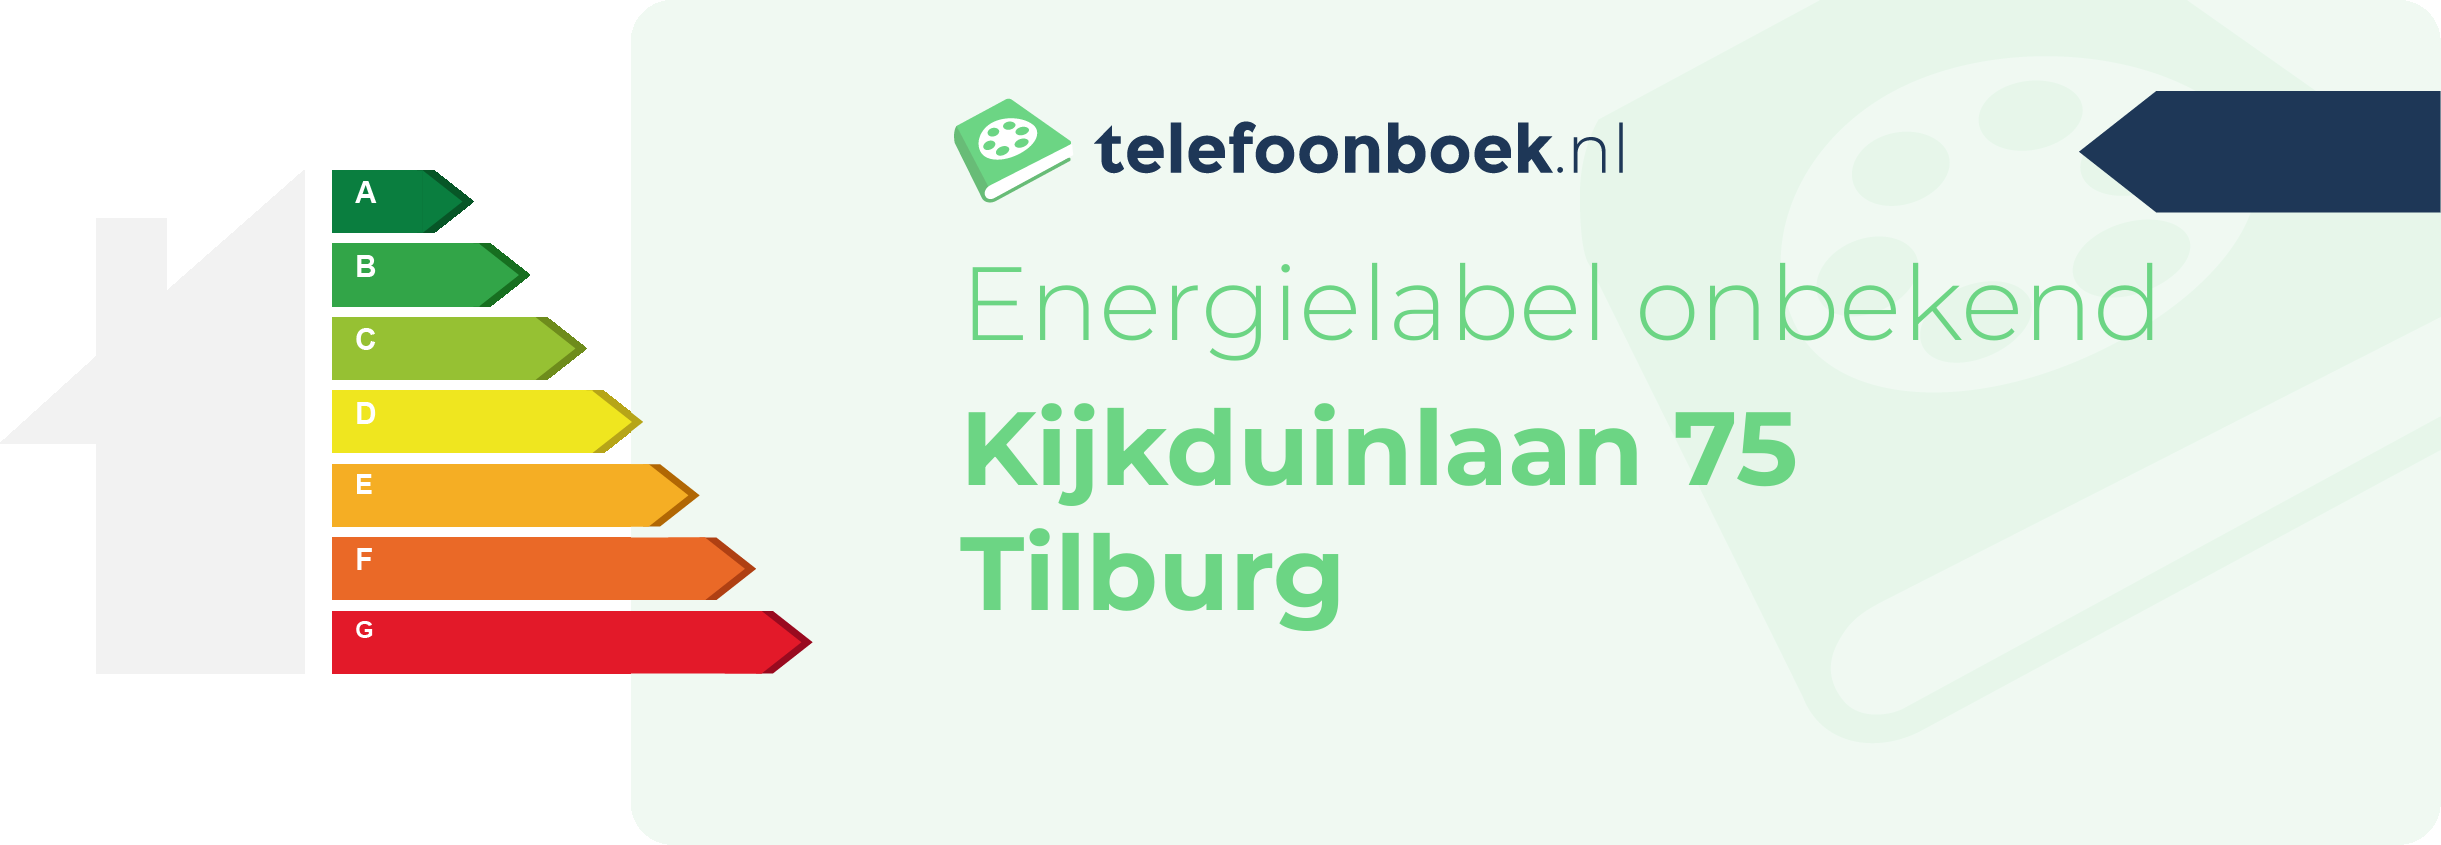 Energielabel Kijkduinlaan 75 Tilburg